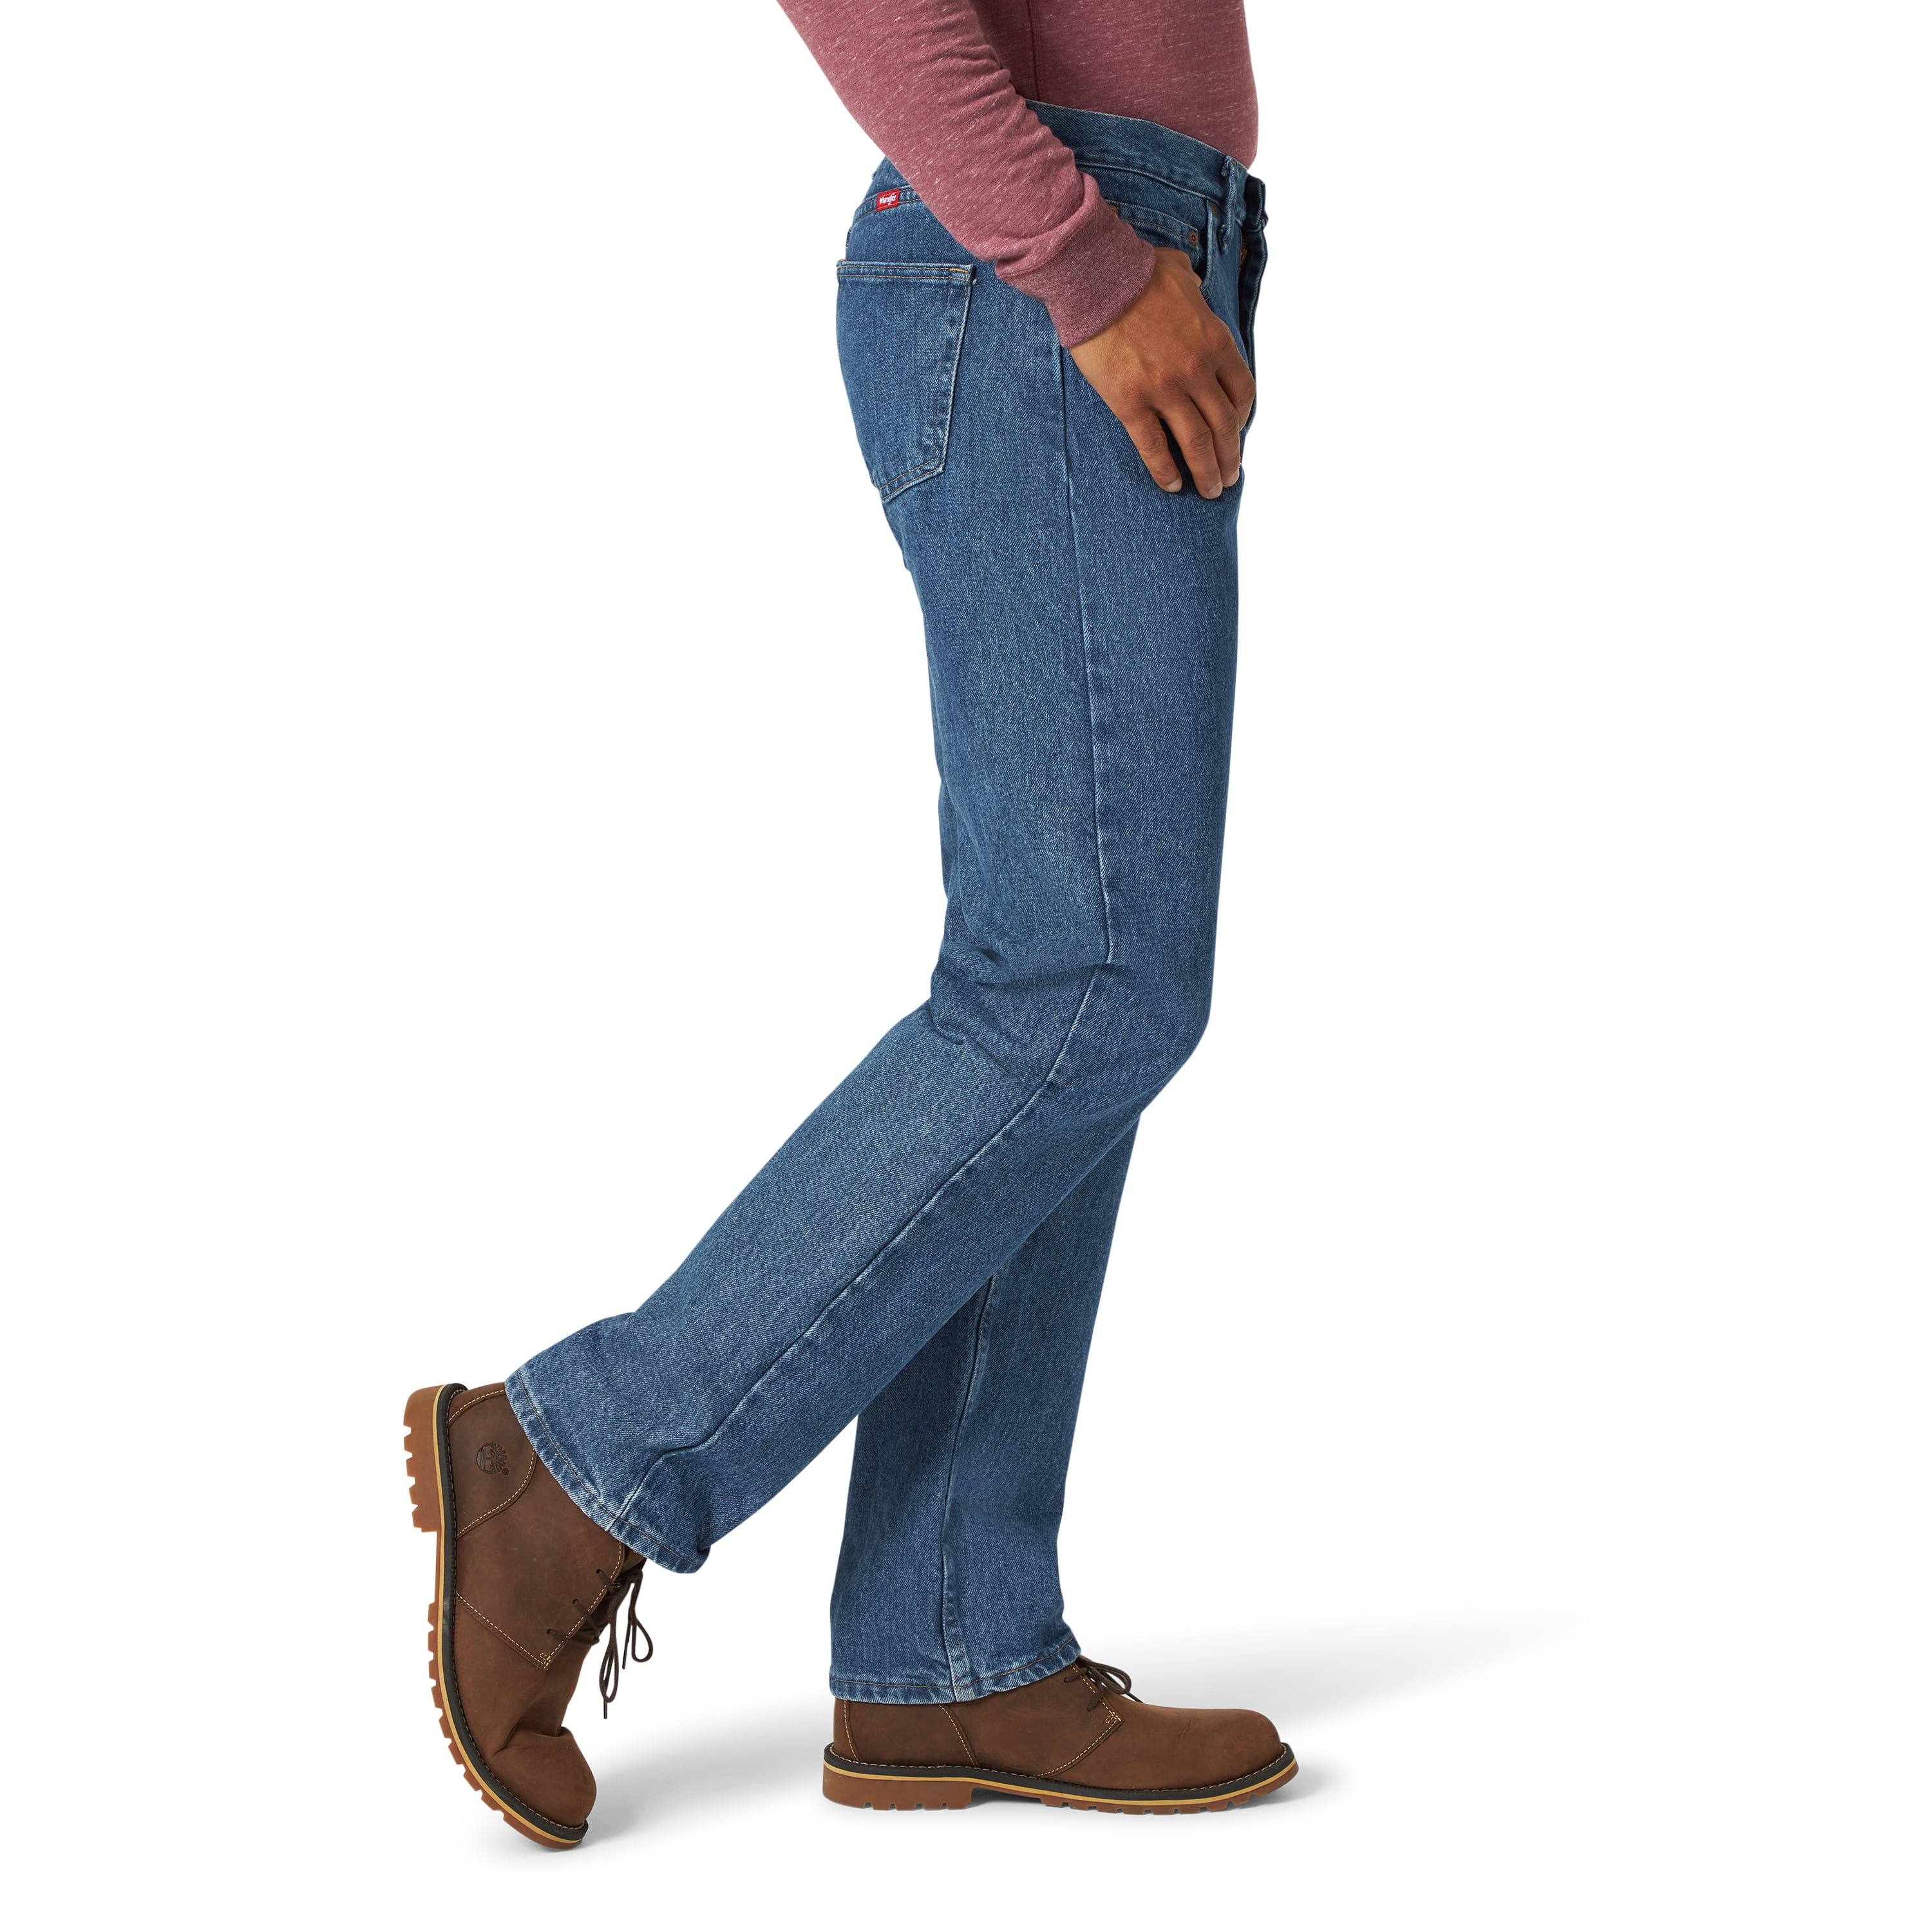 Wrangler Men's Regular Fit Jeans 